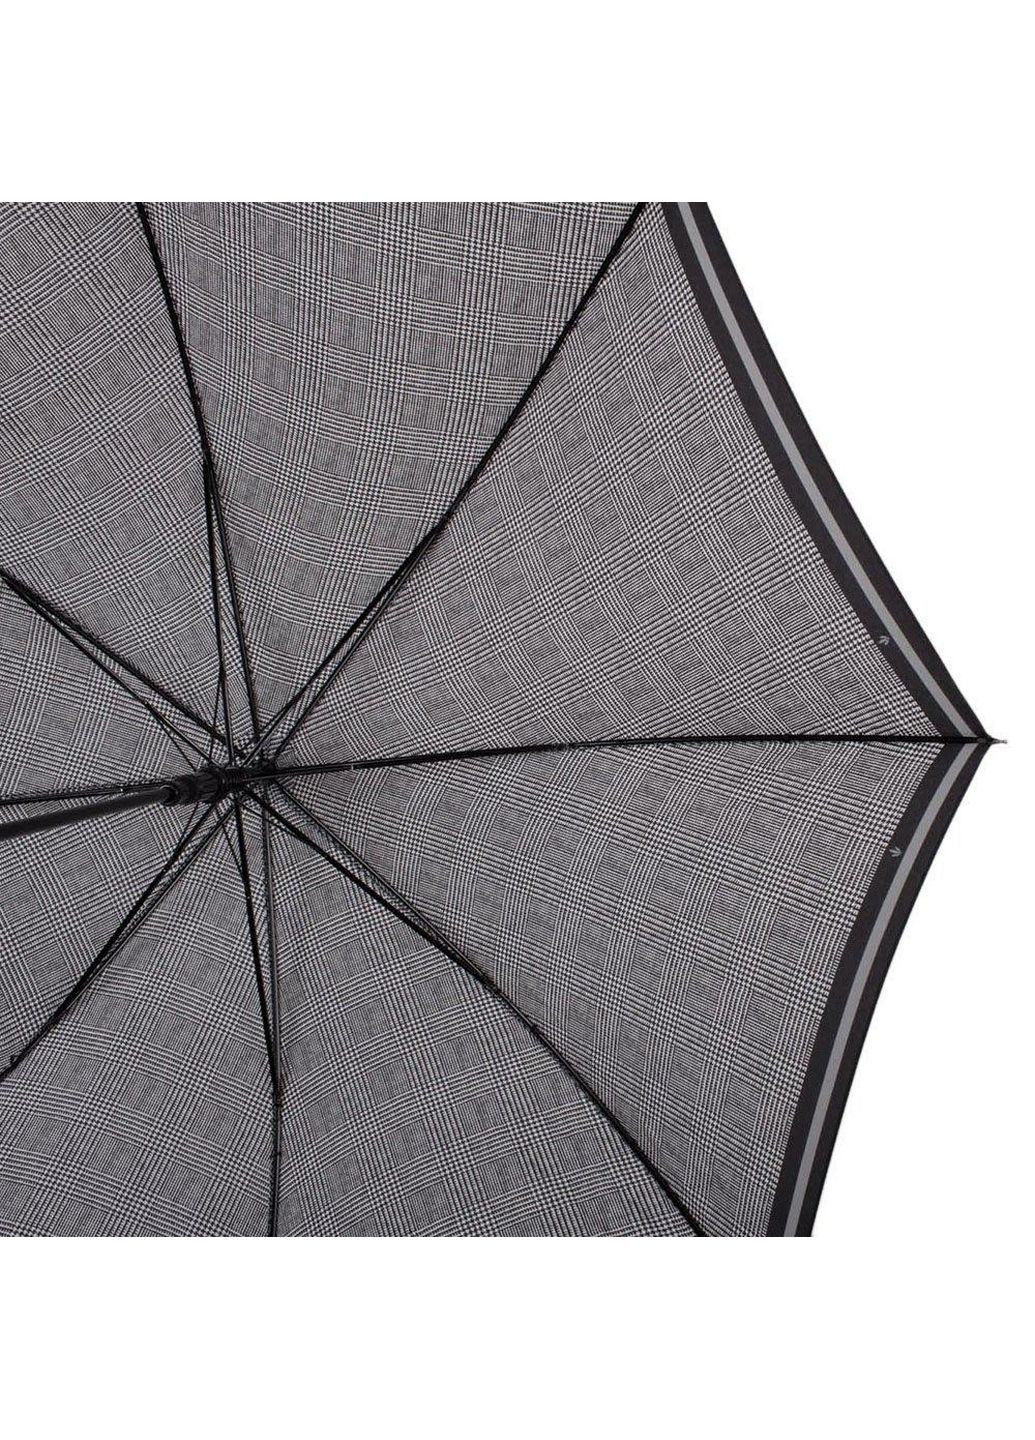 Женский зонт-трость 84см Fulton (288047158)